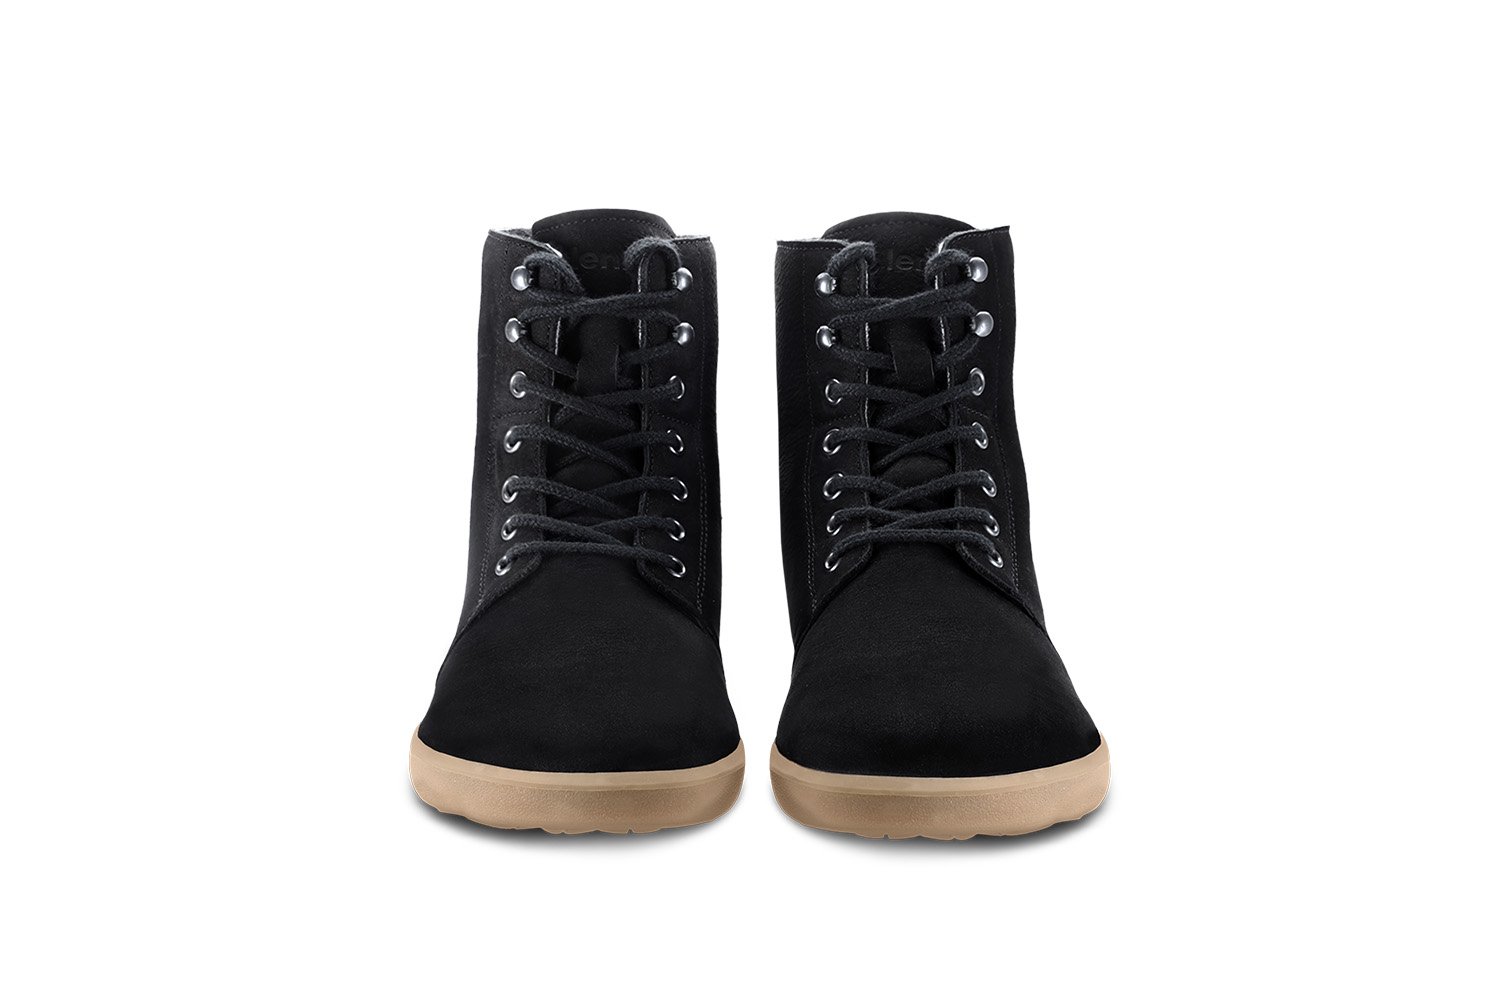 Be Lenka Winter Boots For Cheap Online - Brown Barefoot Snowfox Womens